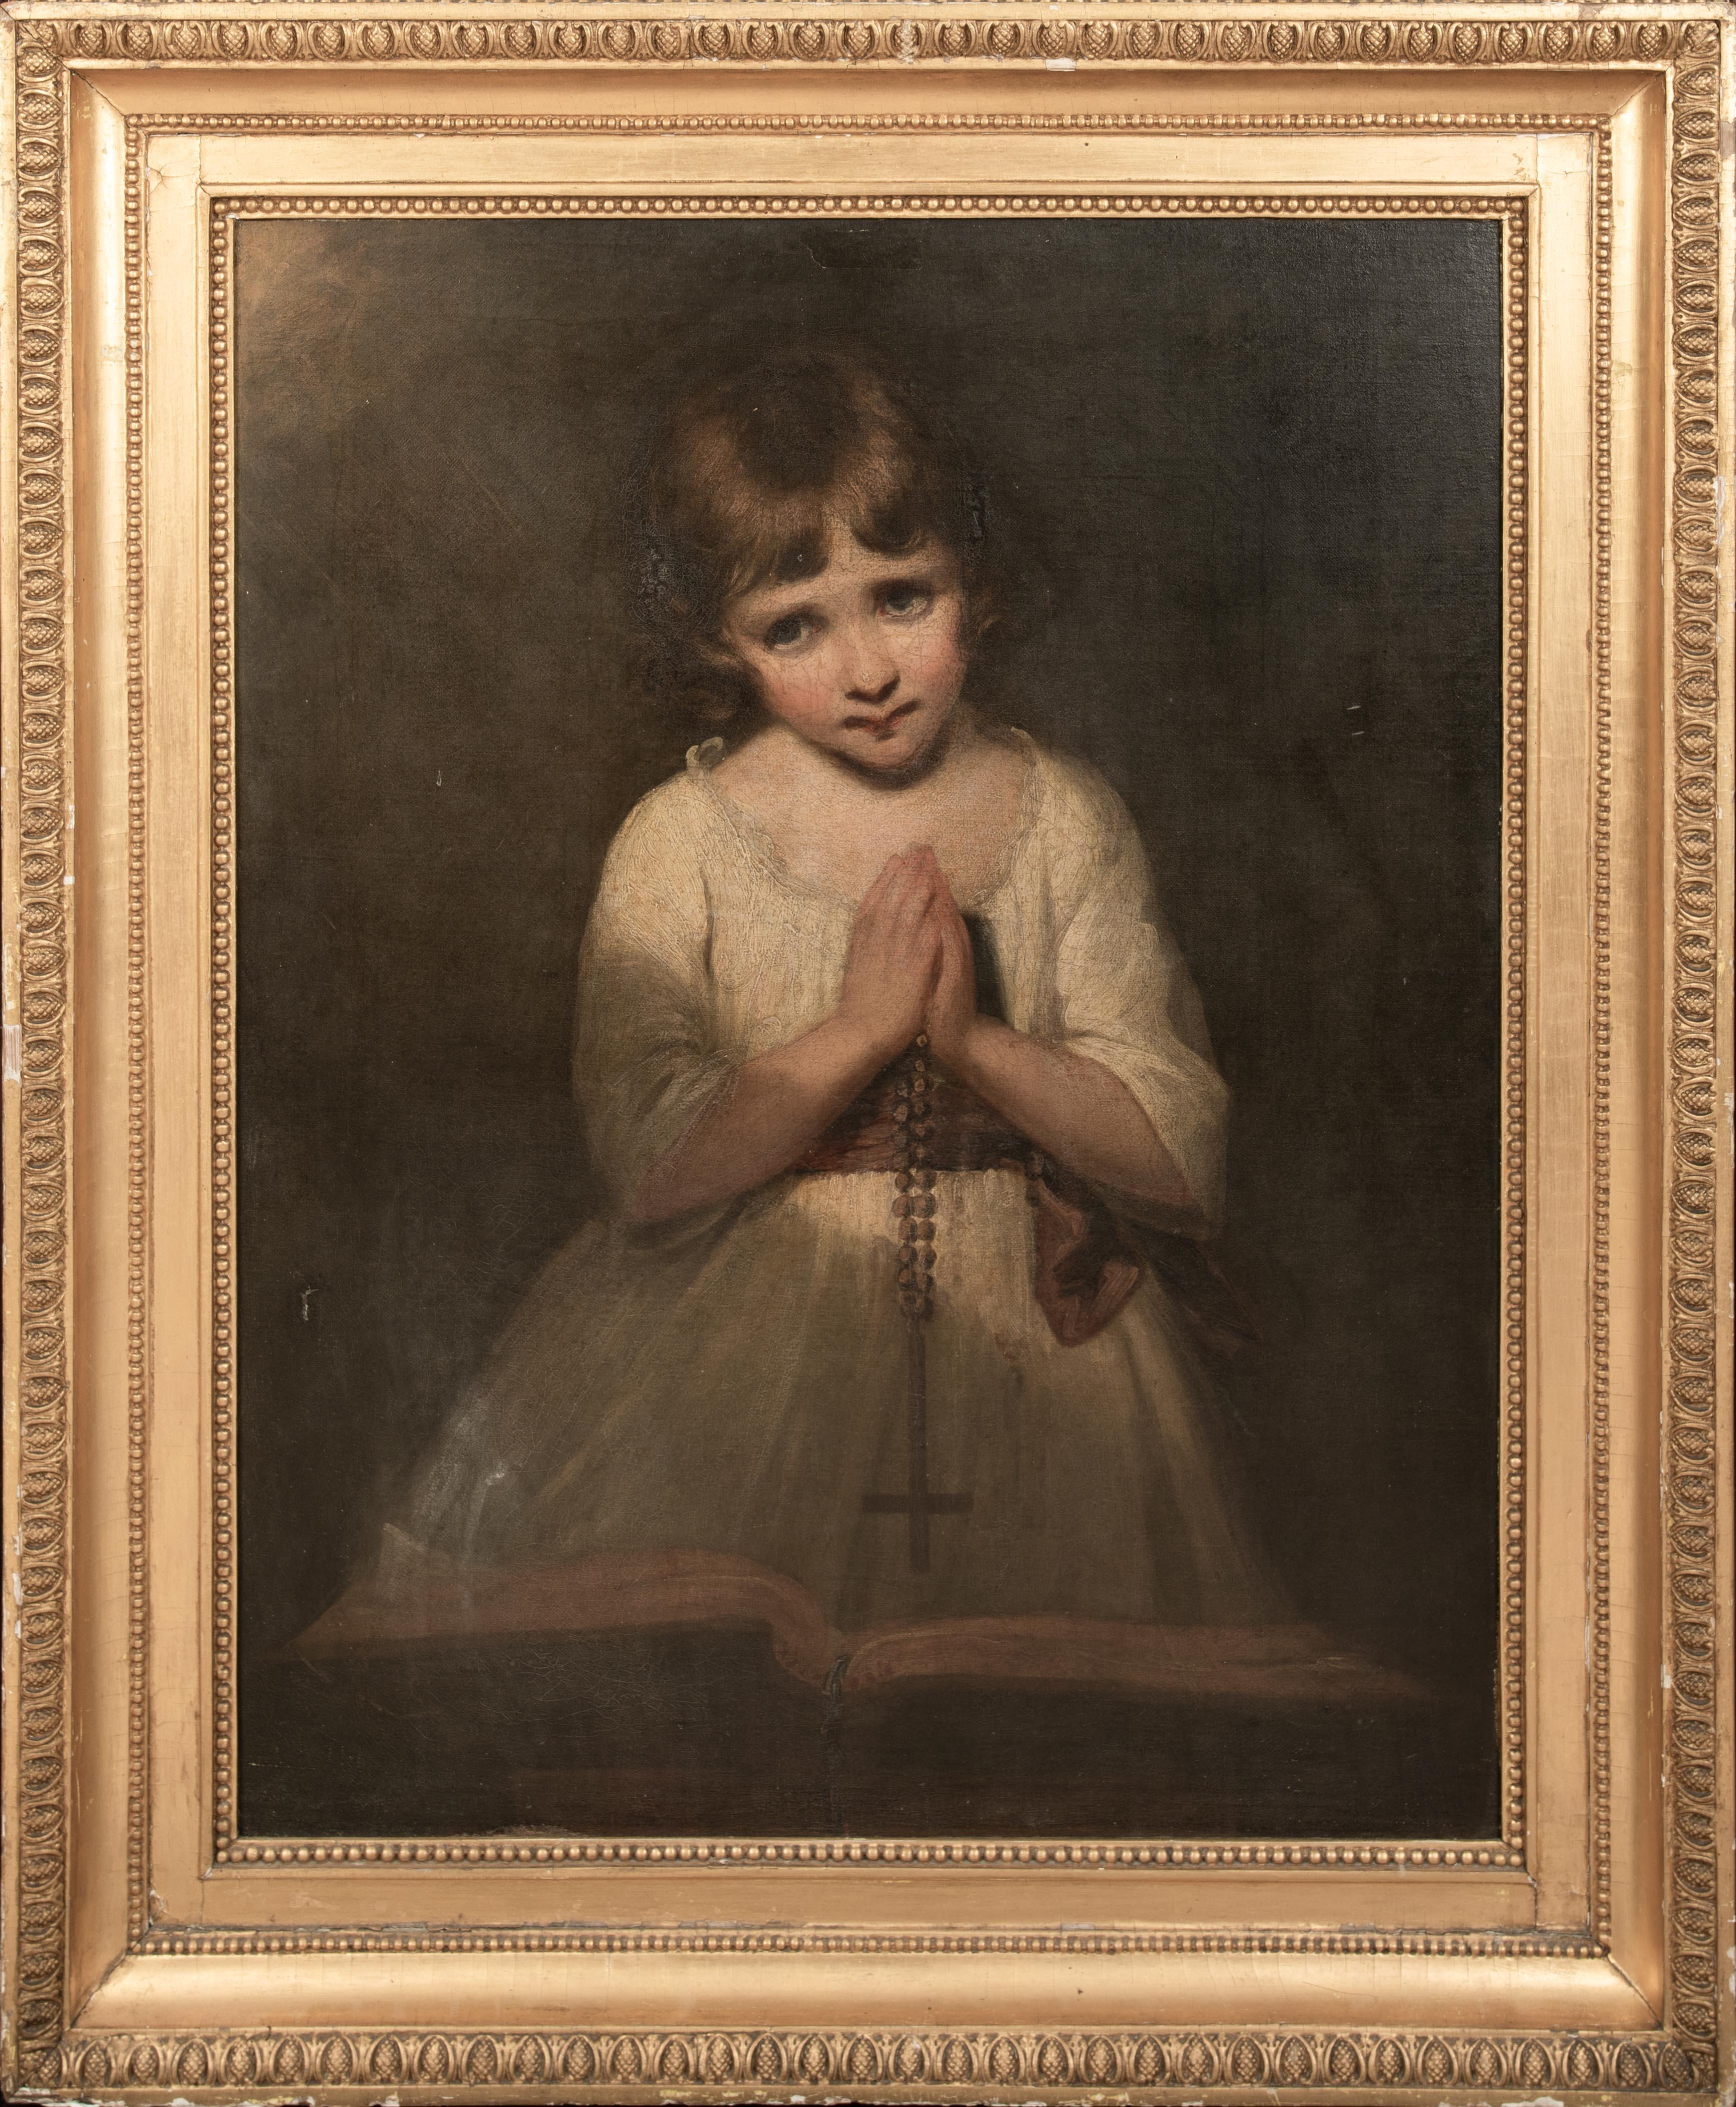 La prière, 19e siècle

JOSHUA REYNOLDS (1723-1792)

Grand portrait d'une jeune fille en prière de l'école anglaise du XVIIIe siècle, huile sur toile attribuée à Joshua Reynolds. Excellente qualité et condition pour son âge, typique des portraits